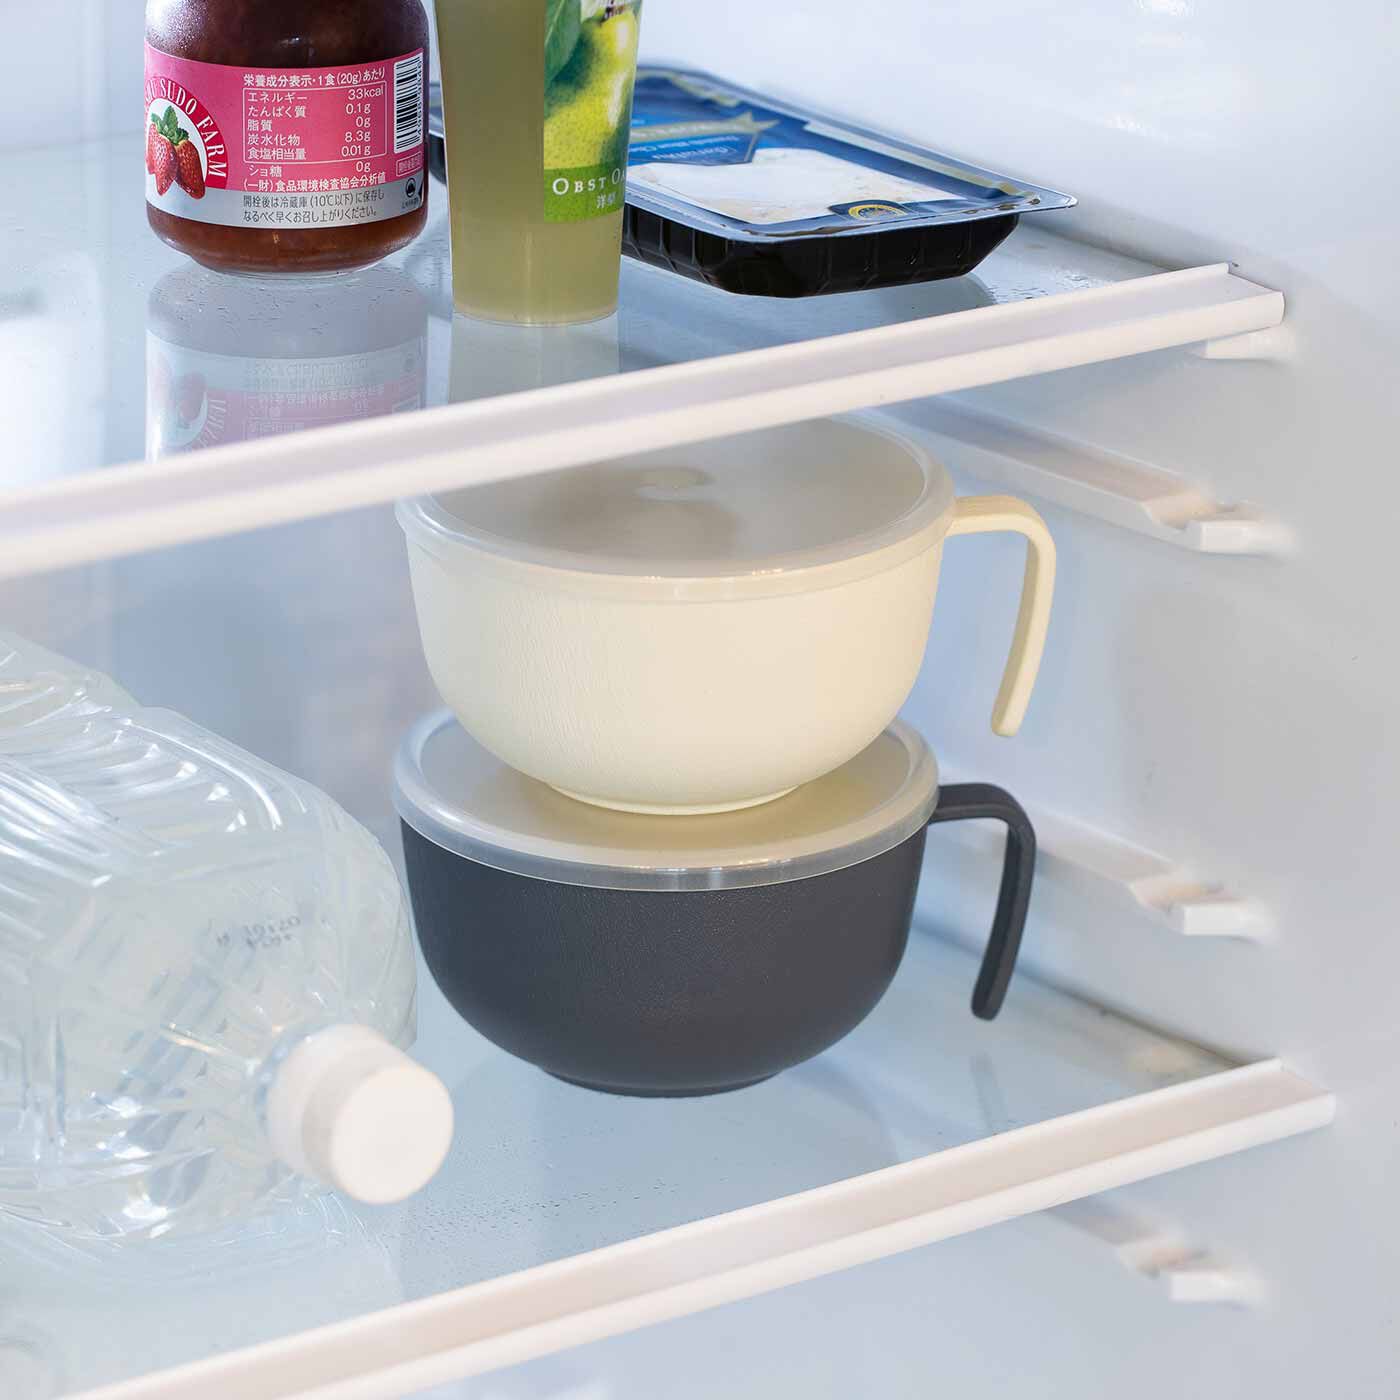 L'AMIPLUS|ラミプリュス　L字の持ち手が収納に便利！ 調理保存・あたためまでできる ふた付きマルチカップの会|ふたをして冷蔵庫で保存もおまかせ。積み重ねられるので省スペース。